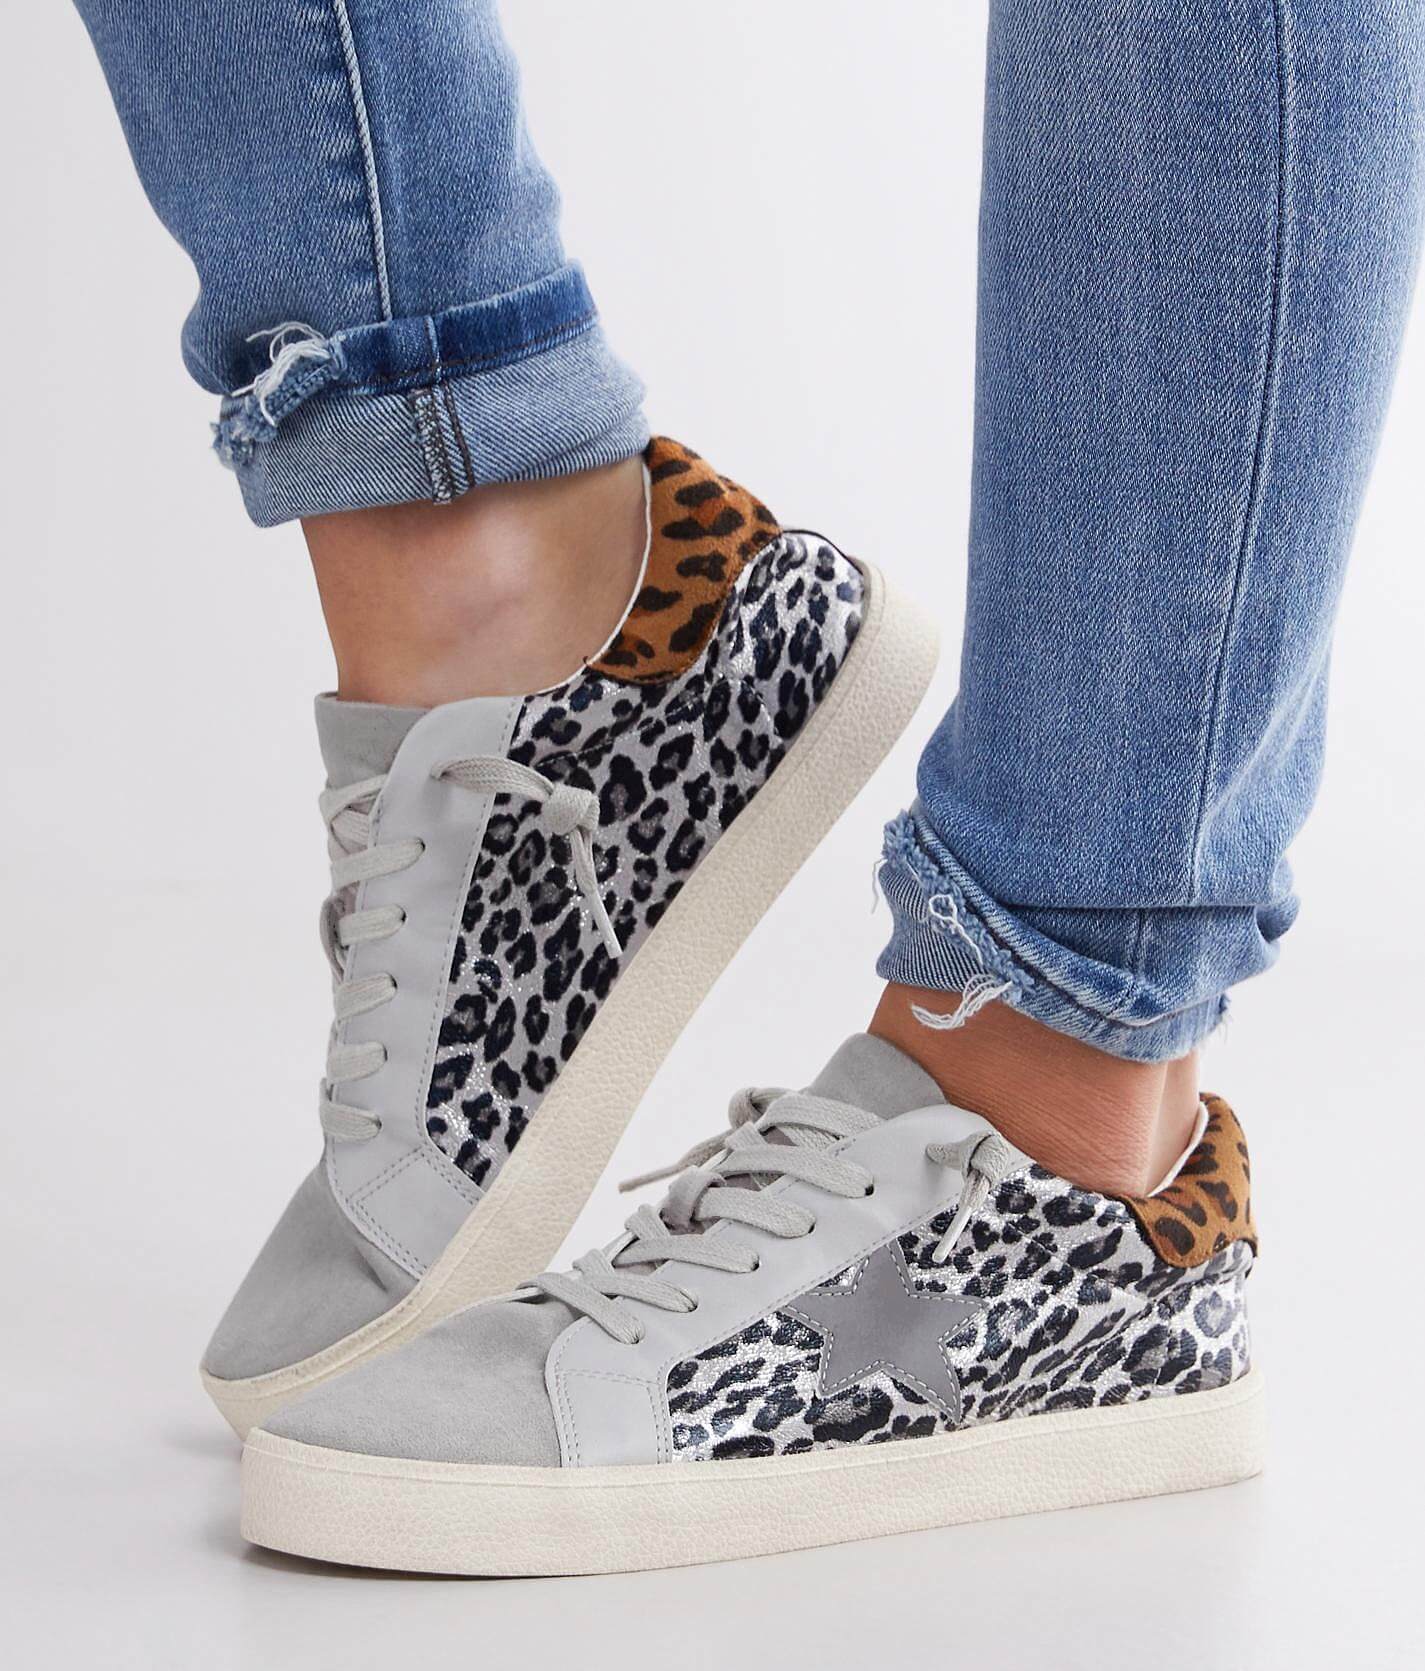 cheetah print shoes womens